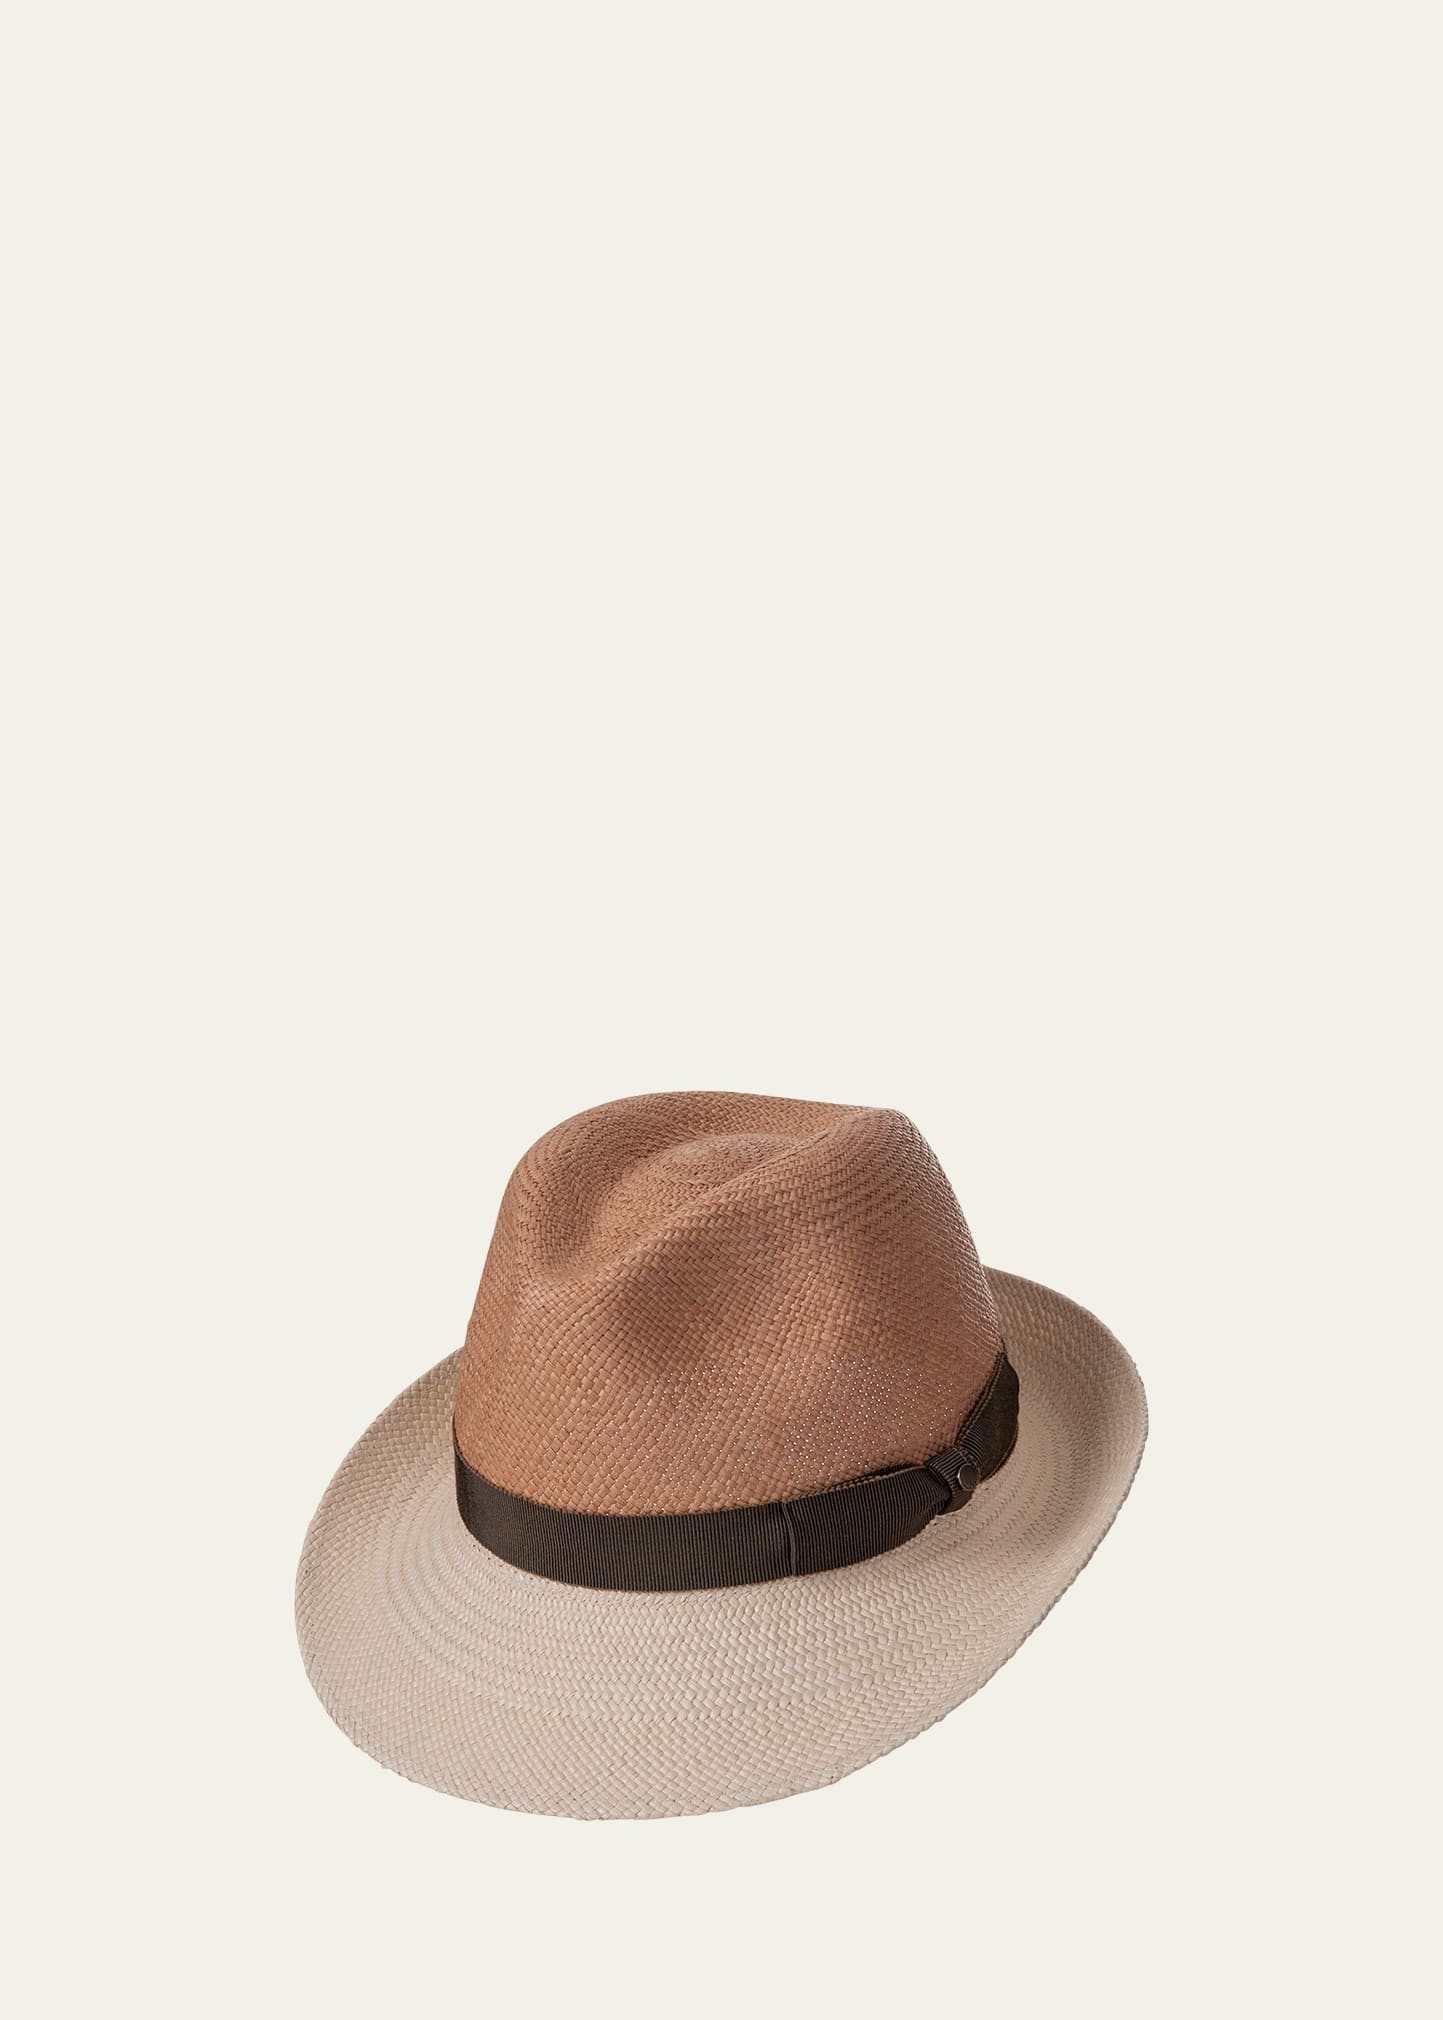 Inverni Men's Straw Bicolor Panama Hat In Drk Nat Li Nat